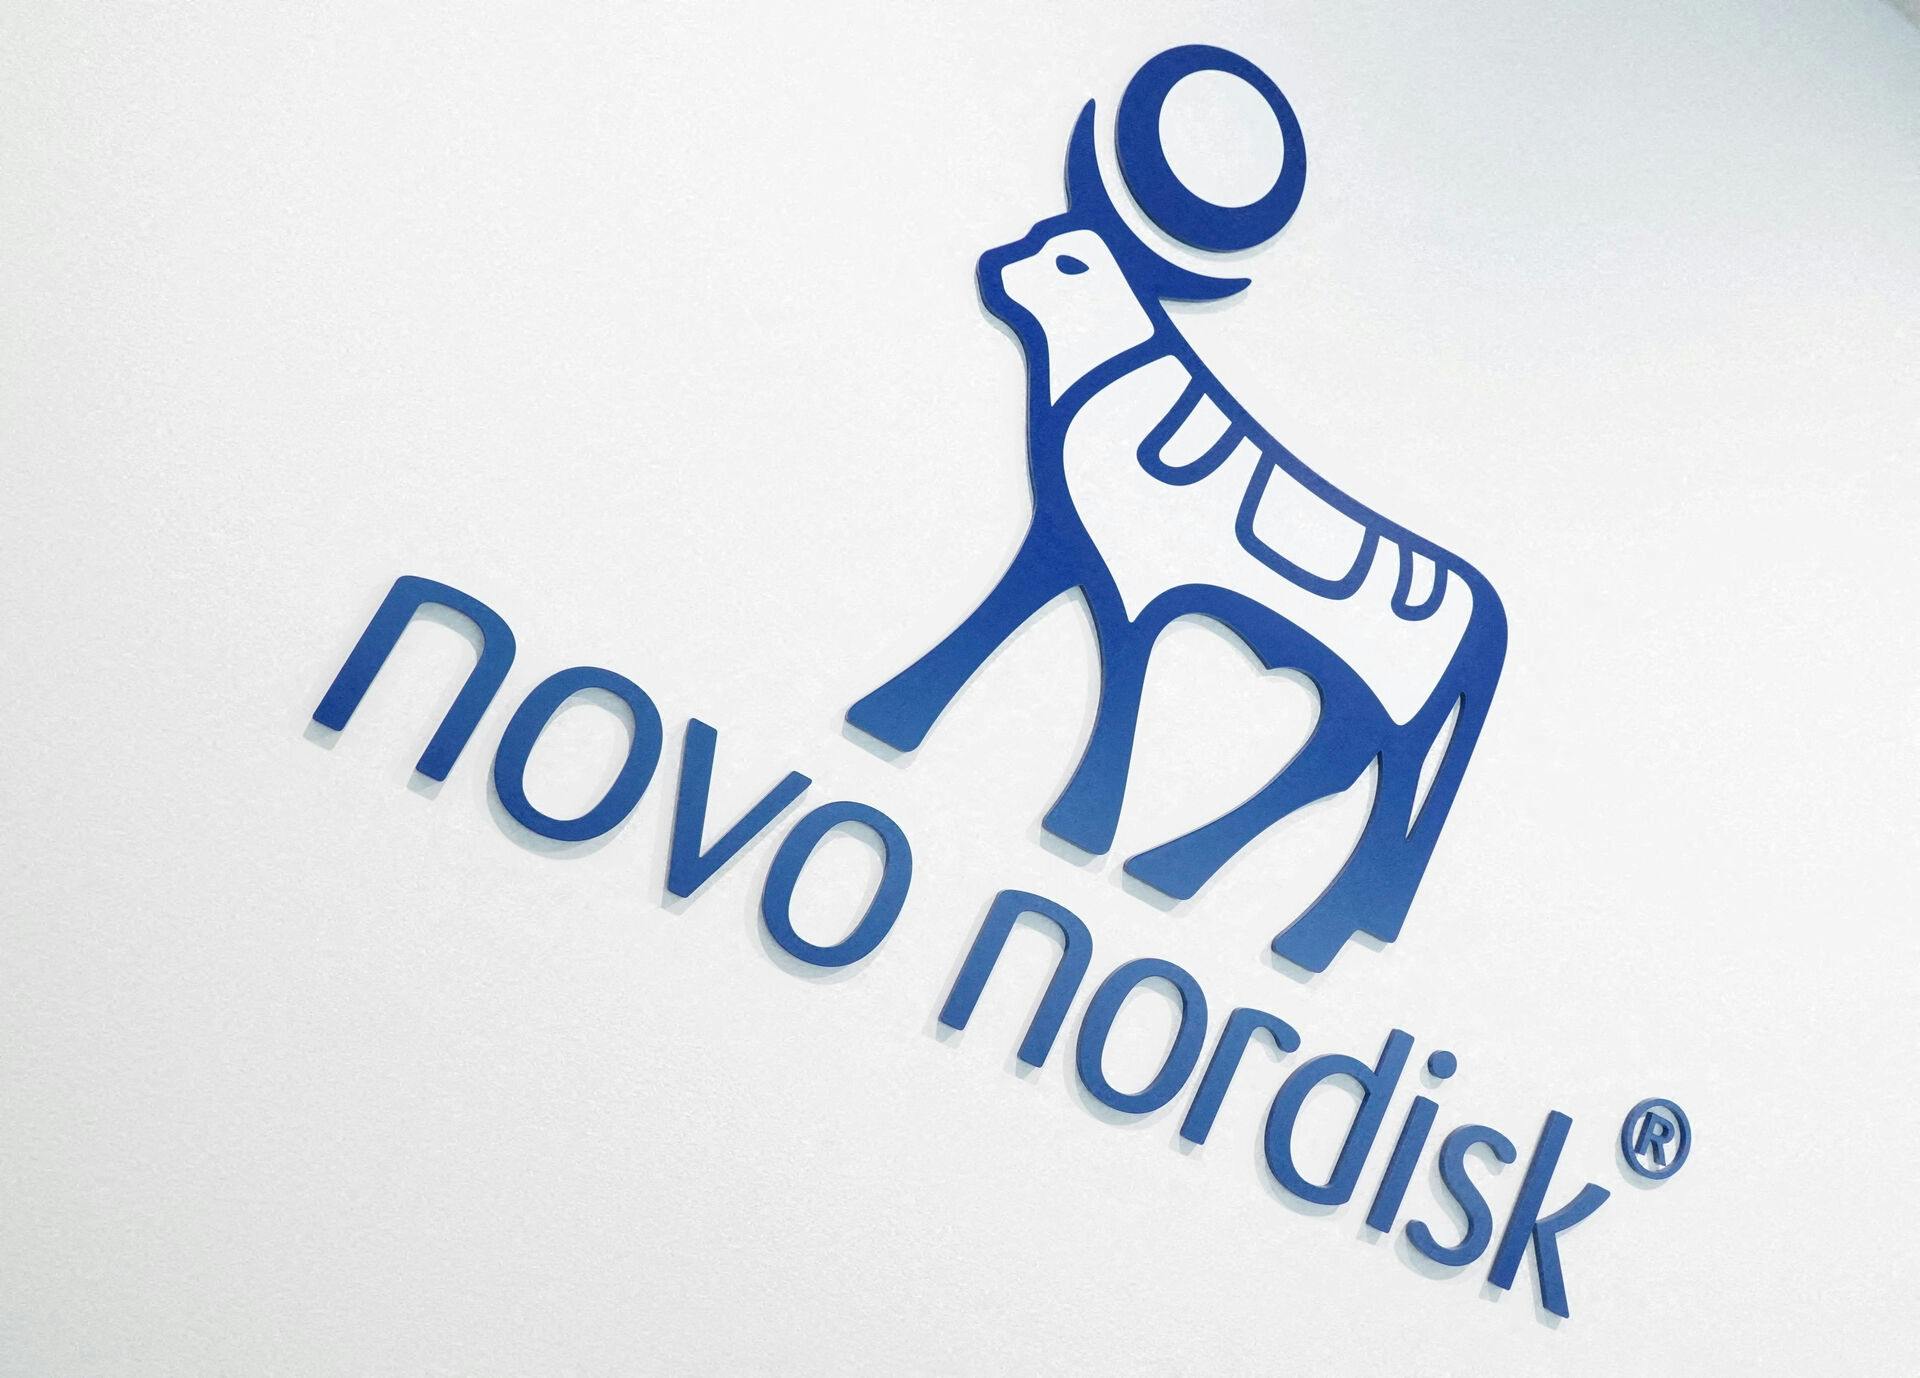 Novo Nordisk er Danmarks mest værdifulde virksomhed.